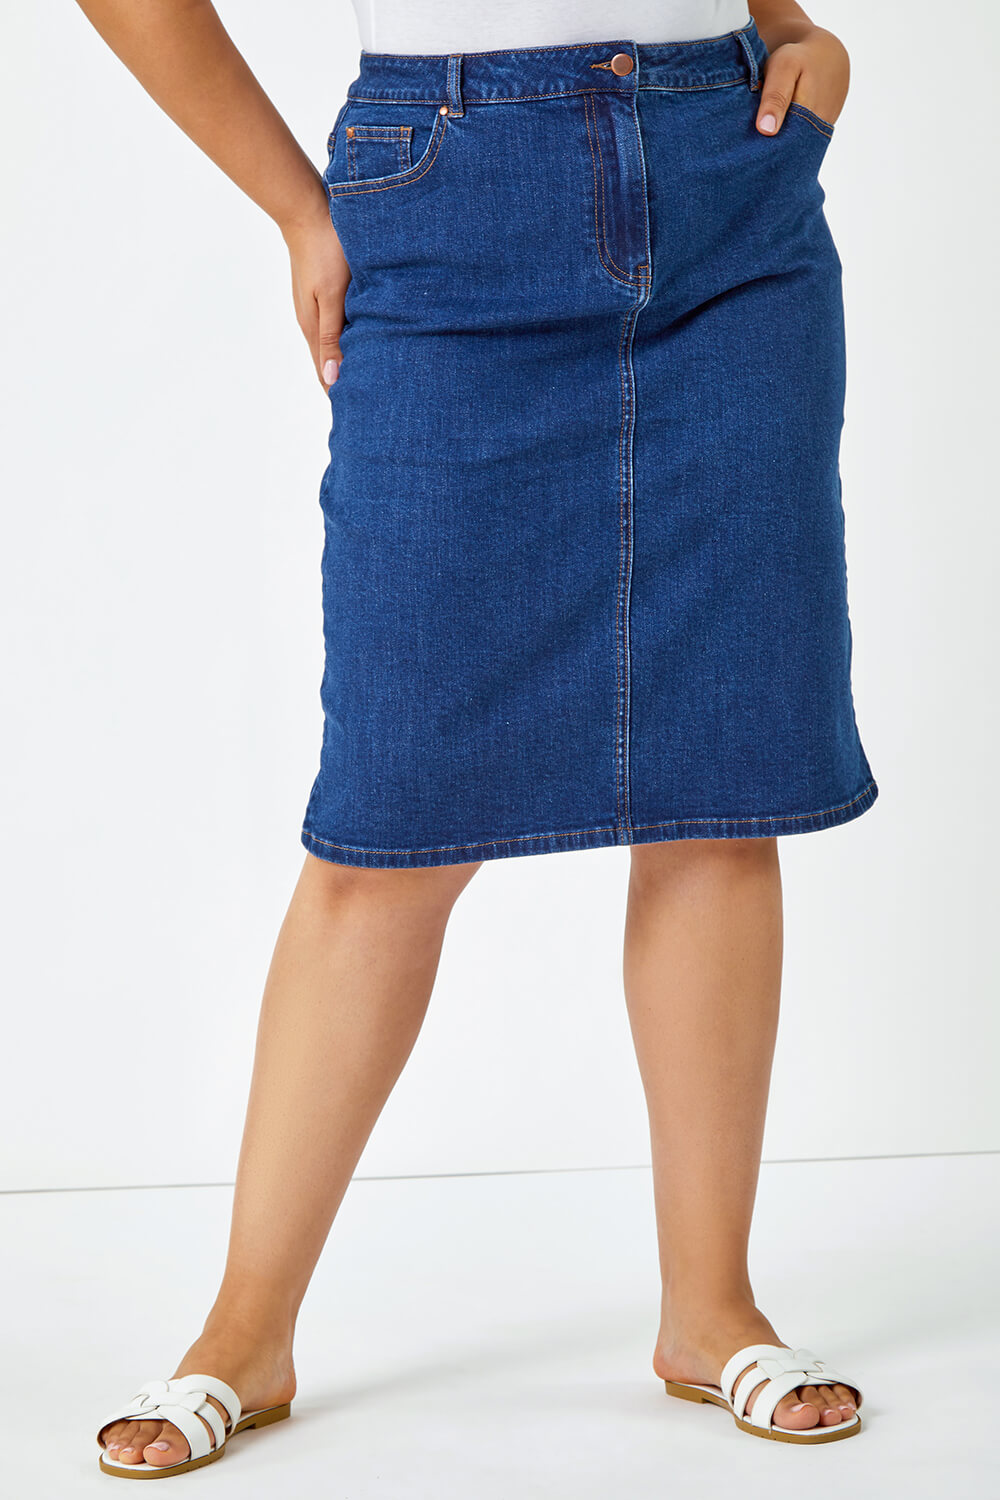 Indigo Curve Cotton A-Line Denim Skirt, Image 4 of 5